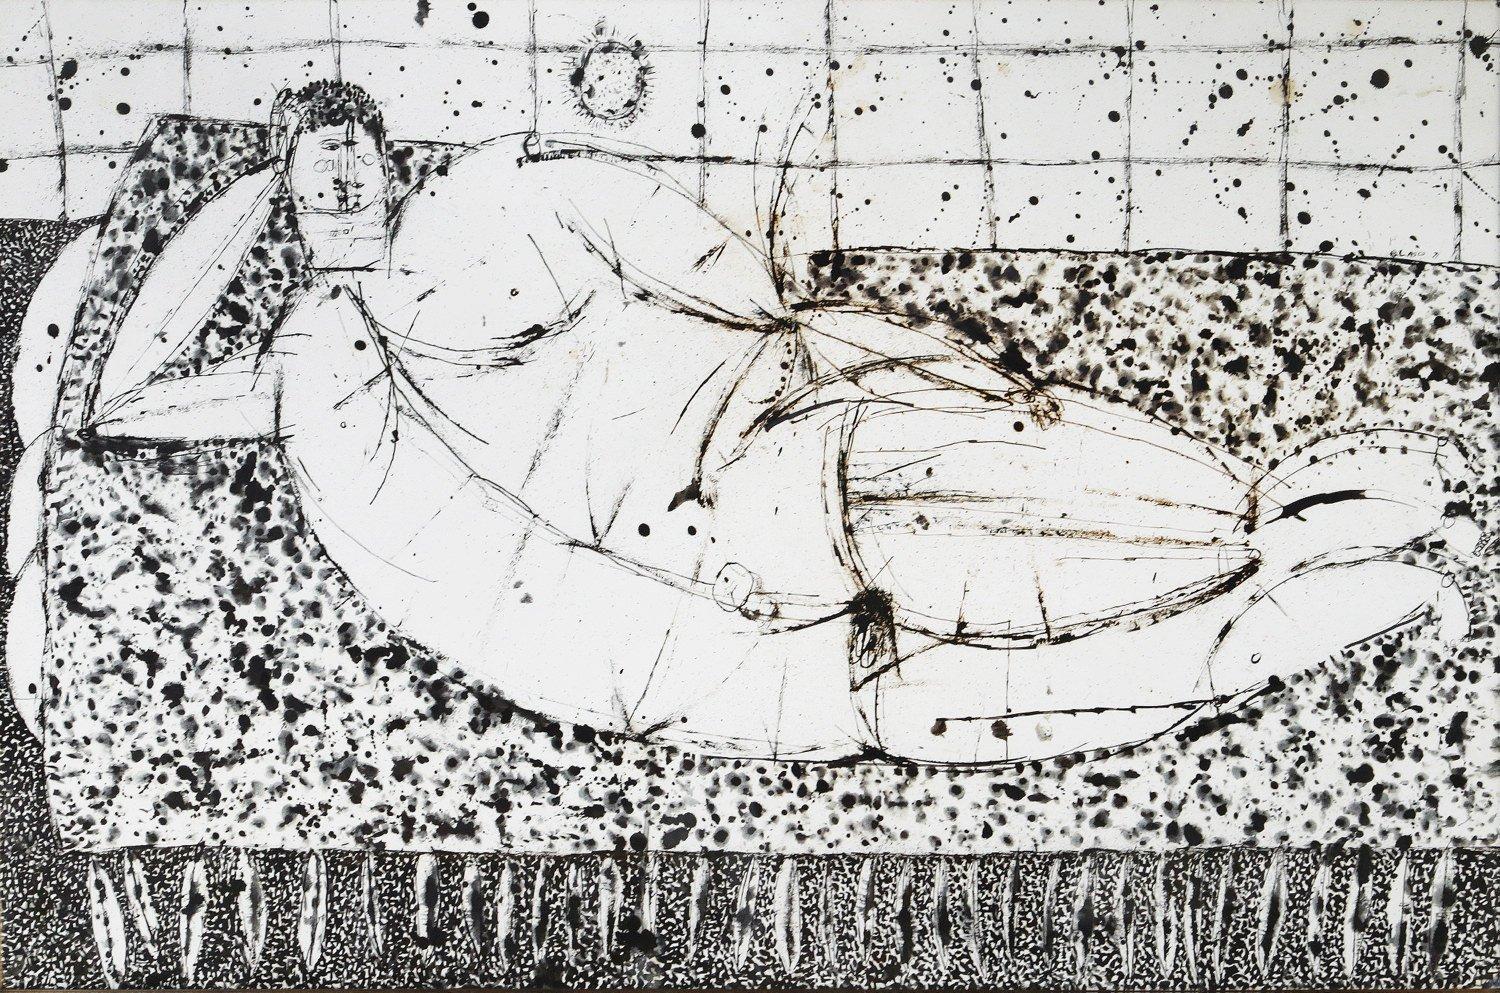 Joseph Glasco Figurative Art – Liegende nackte männliche Figur, figurale expressionistische New Yorker Künstlerin mit Tuschezeichnung